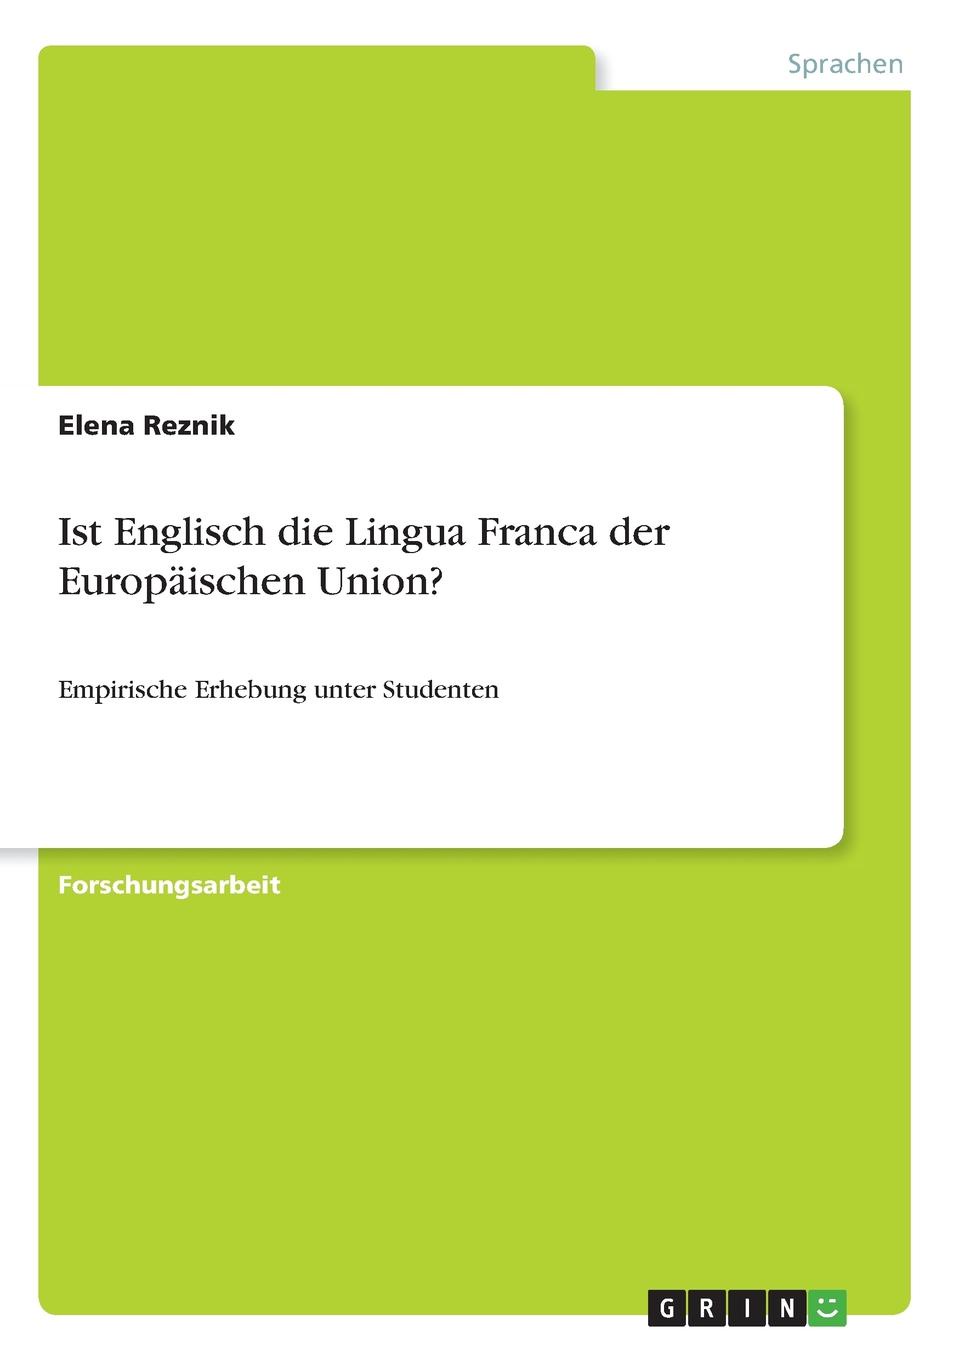 Elena Reznik Ist Englisch die Lingua Franca der Europaischen Union.